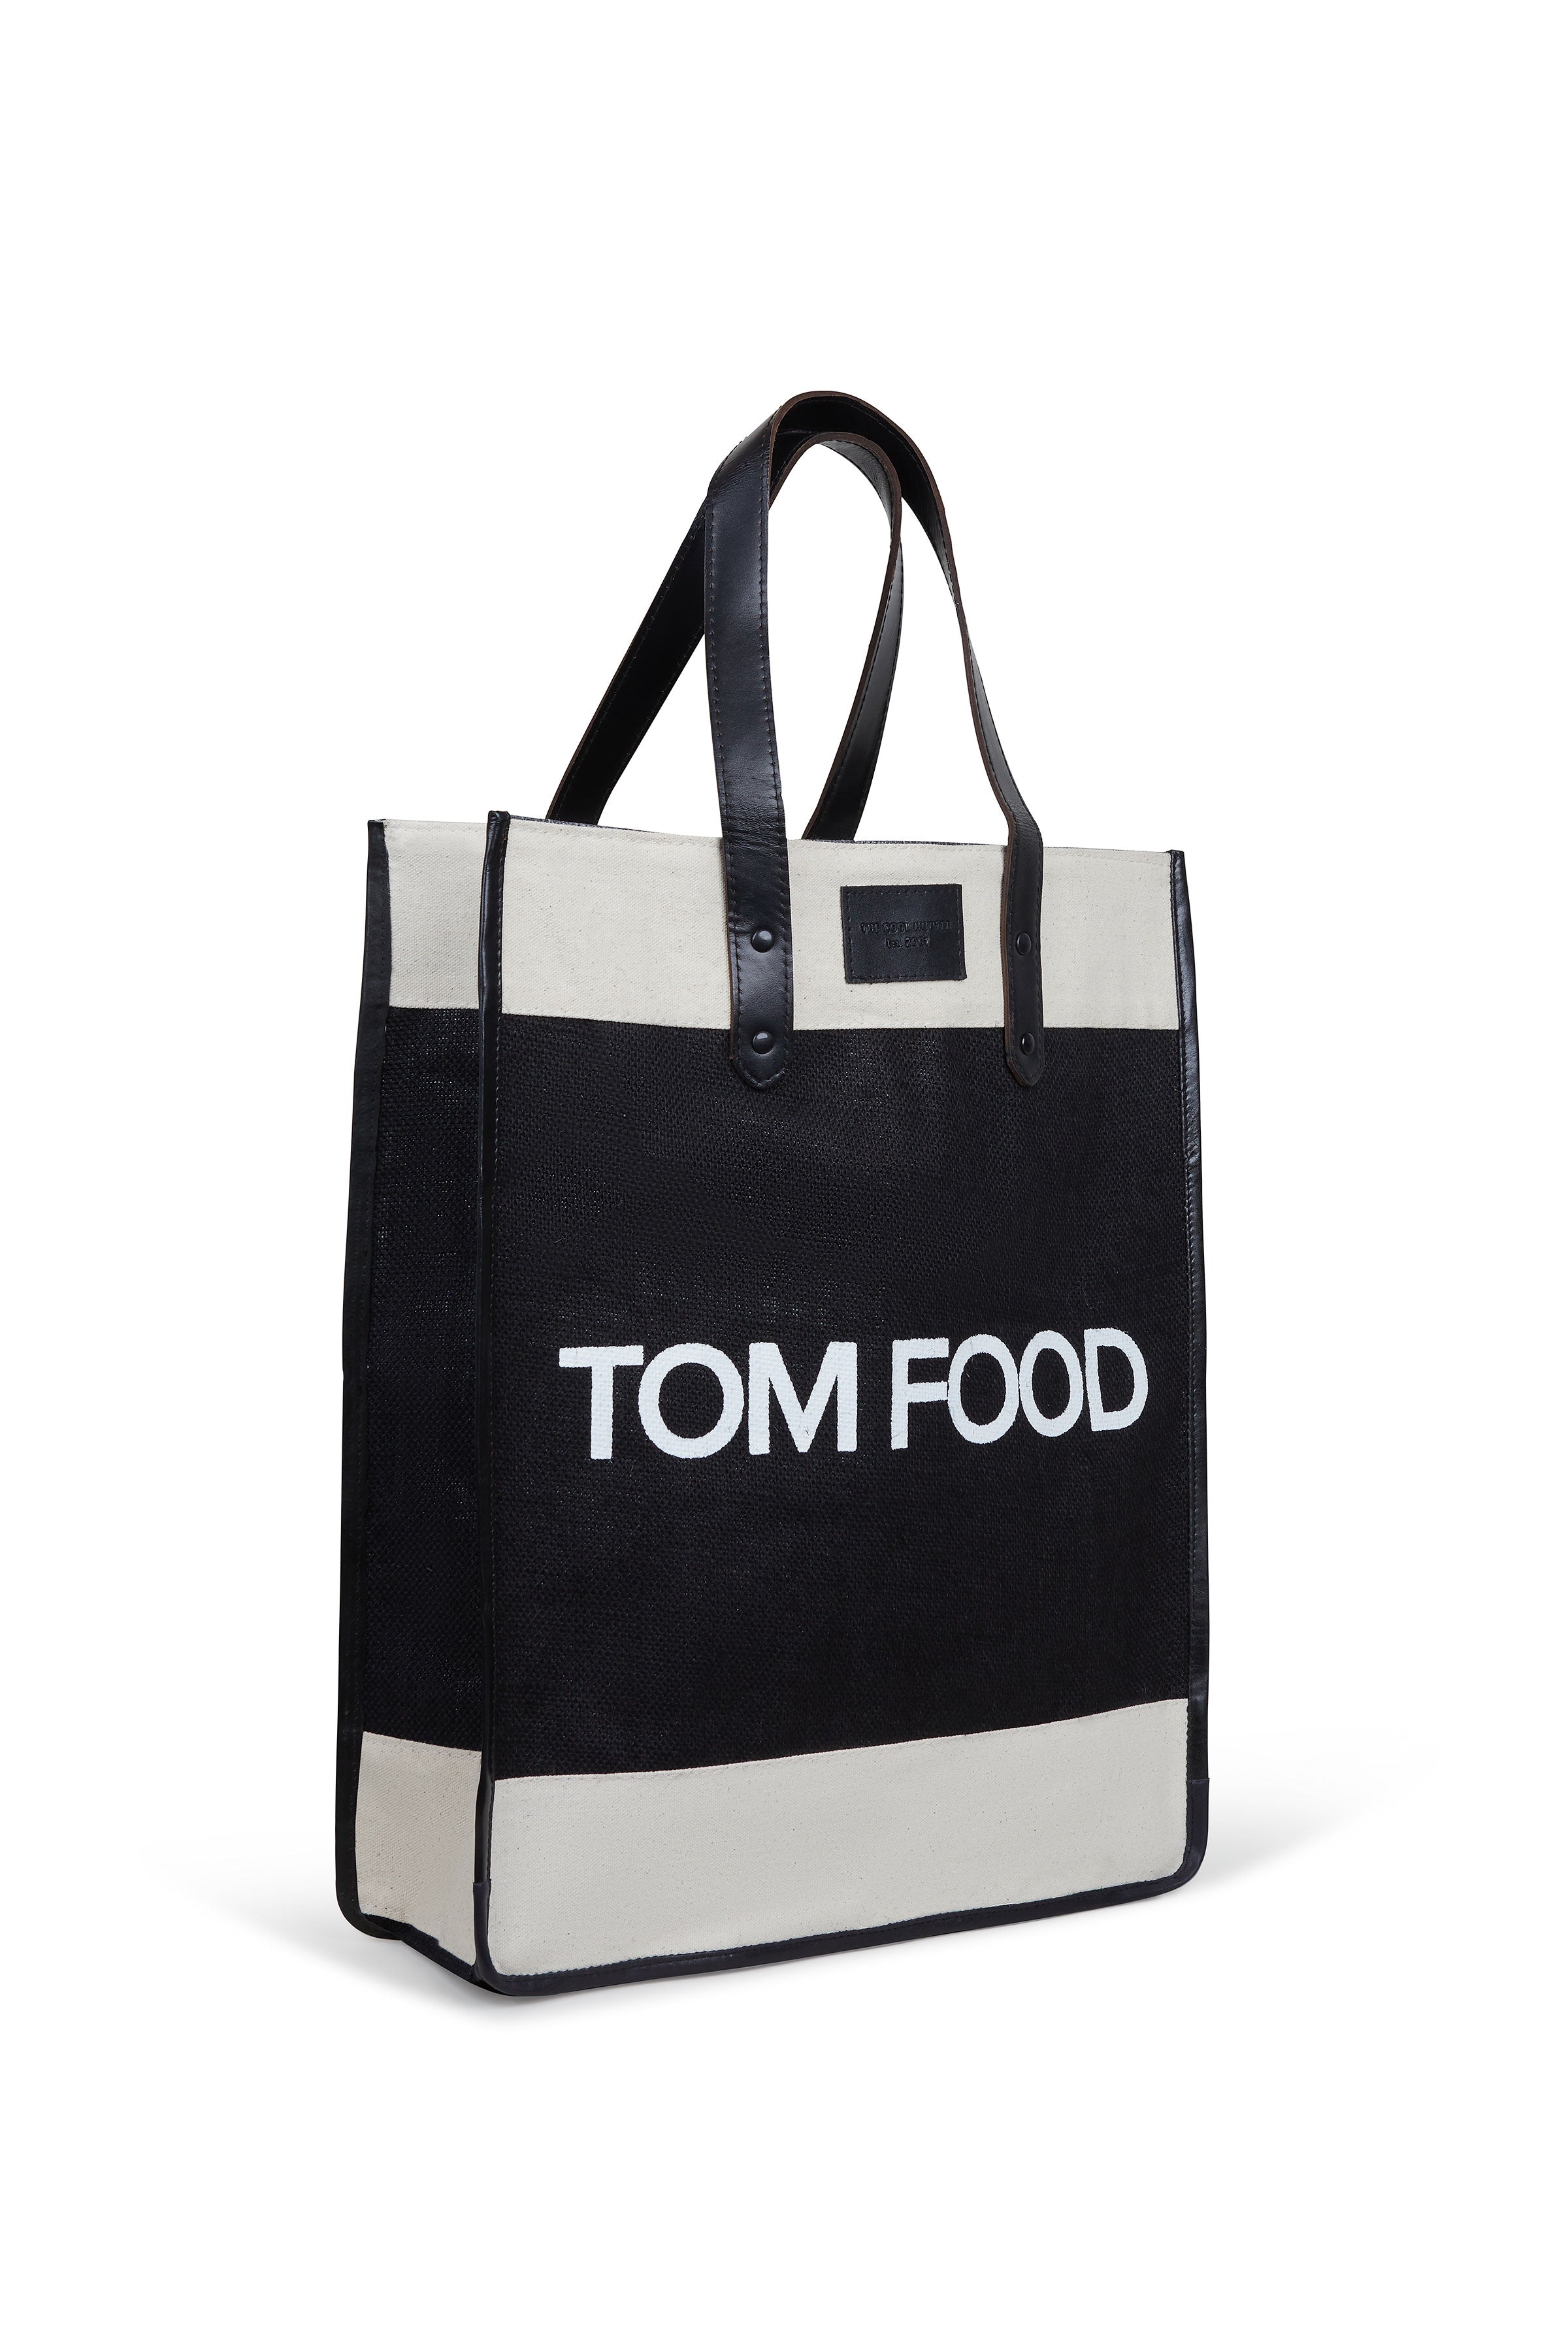 The Cool Hunter Market Bag Black Leather - Tom Food - NEW